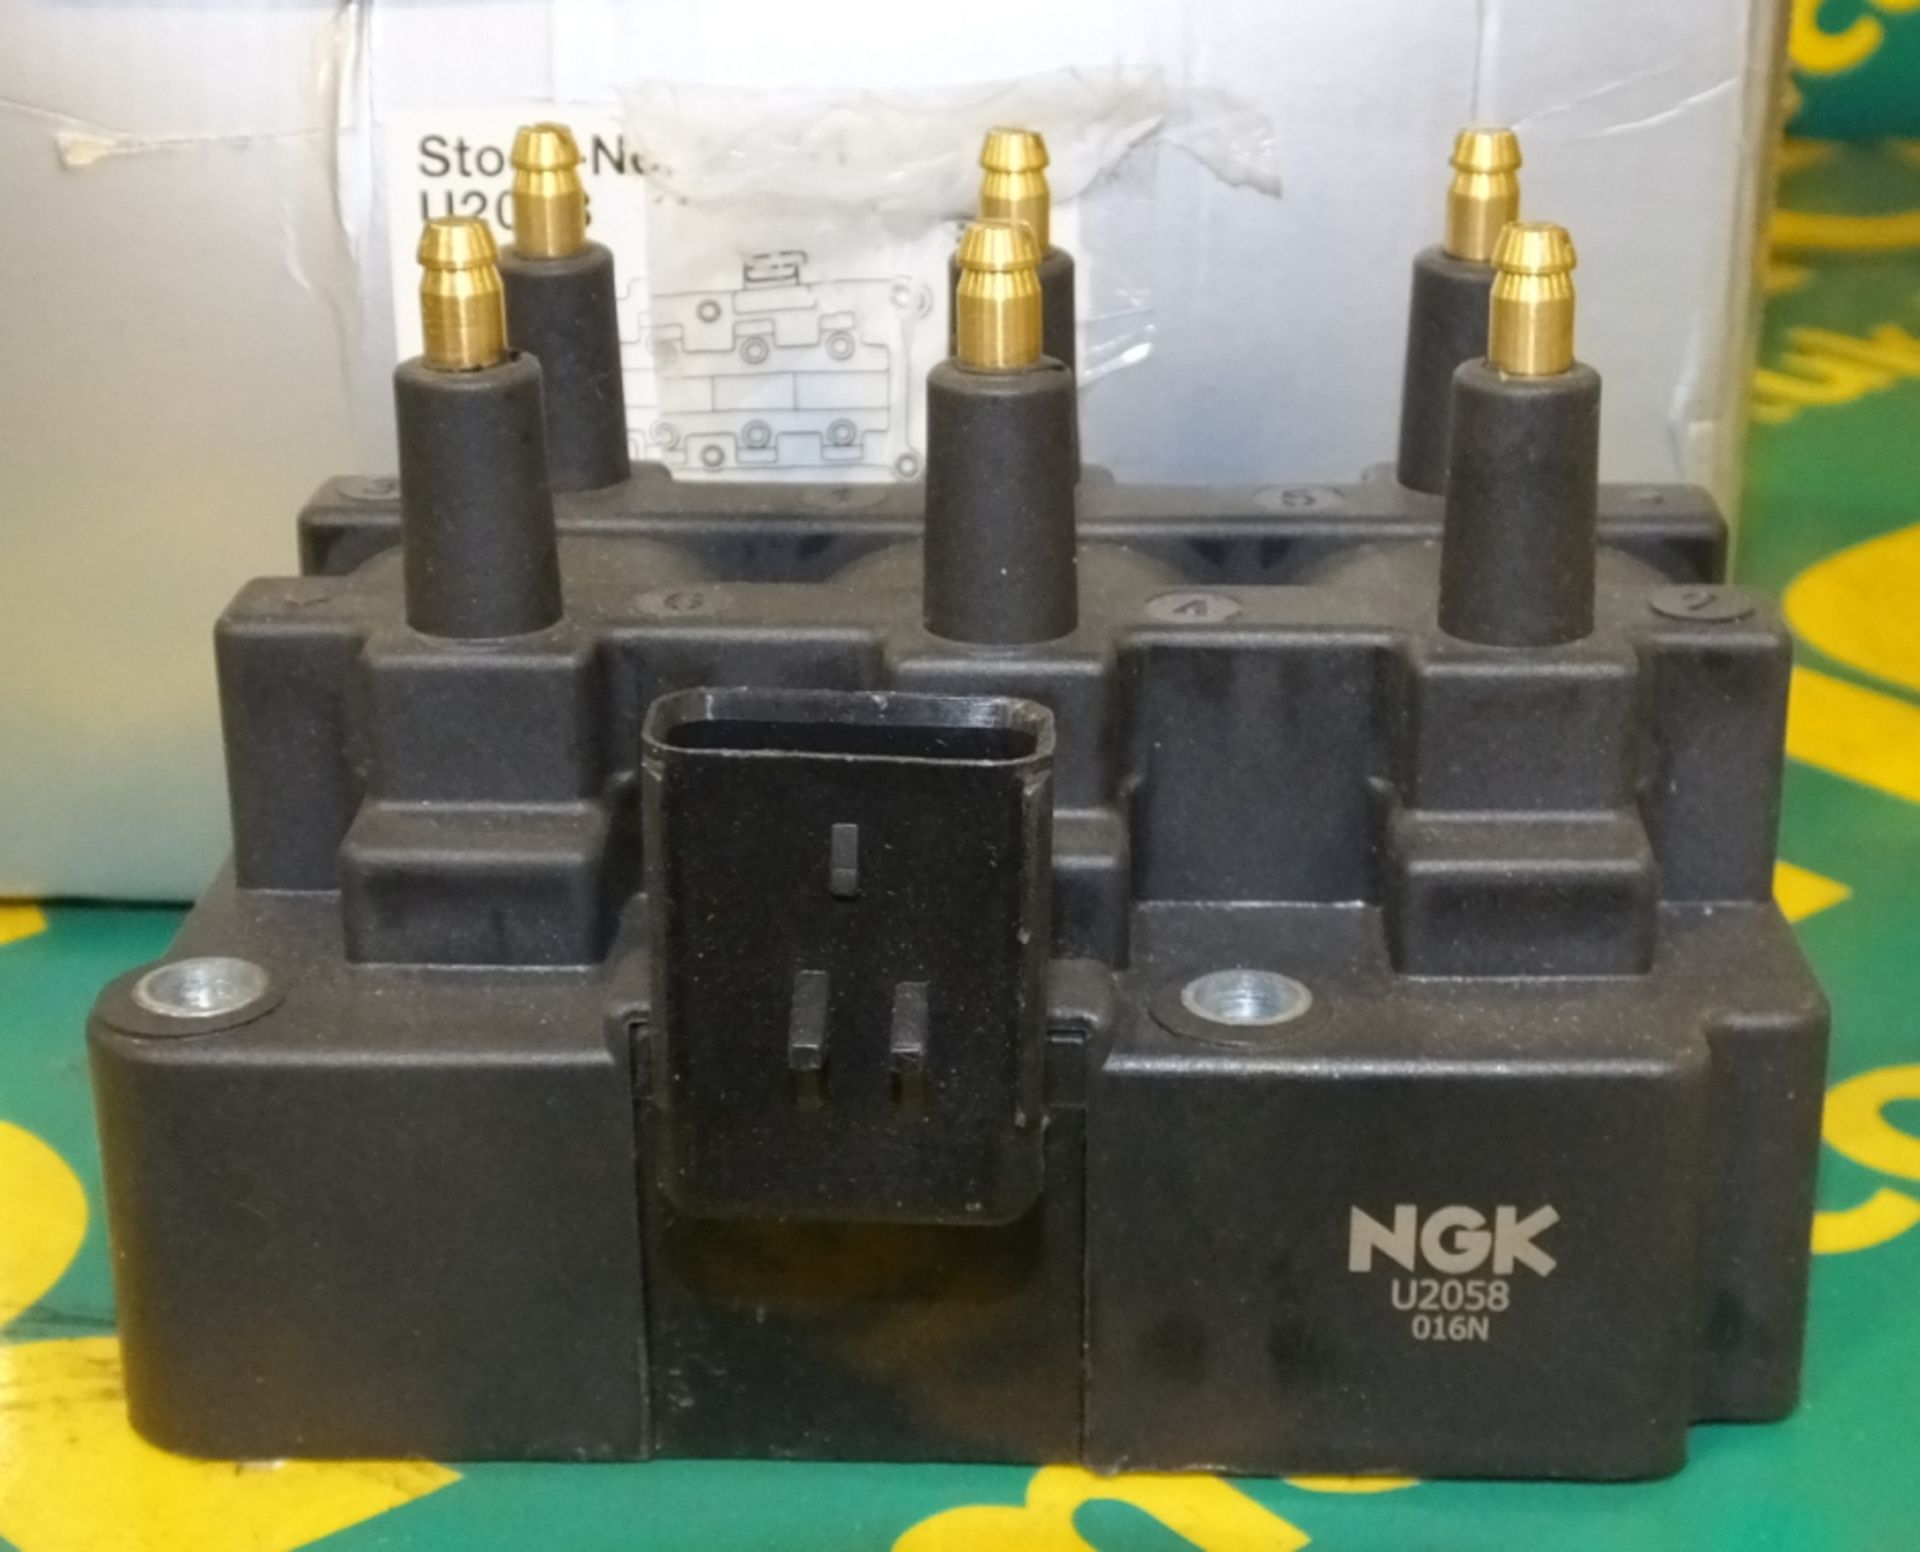 NGK Ignition Coil - U2058 016N - Image 2 of 3